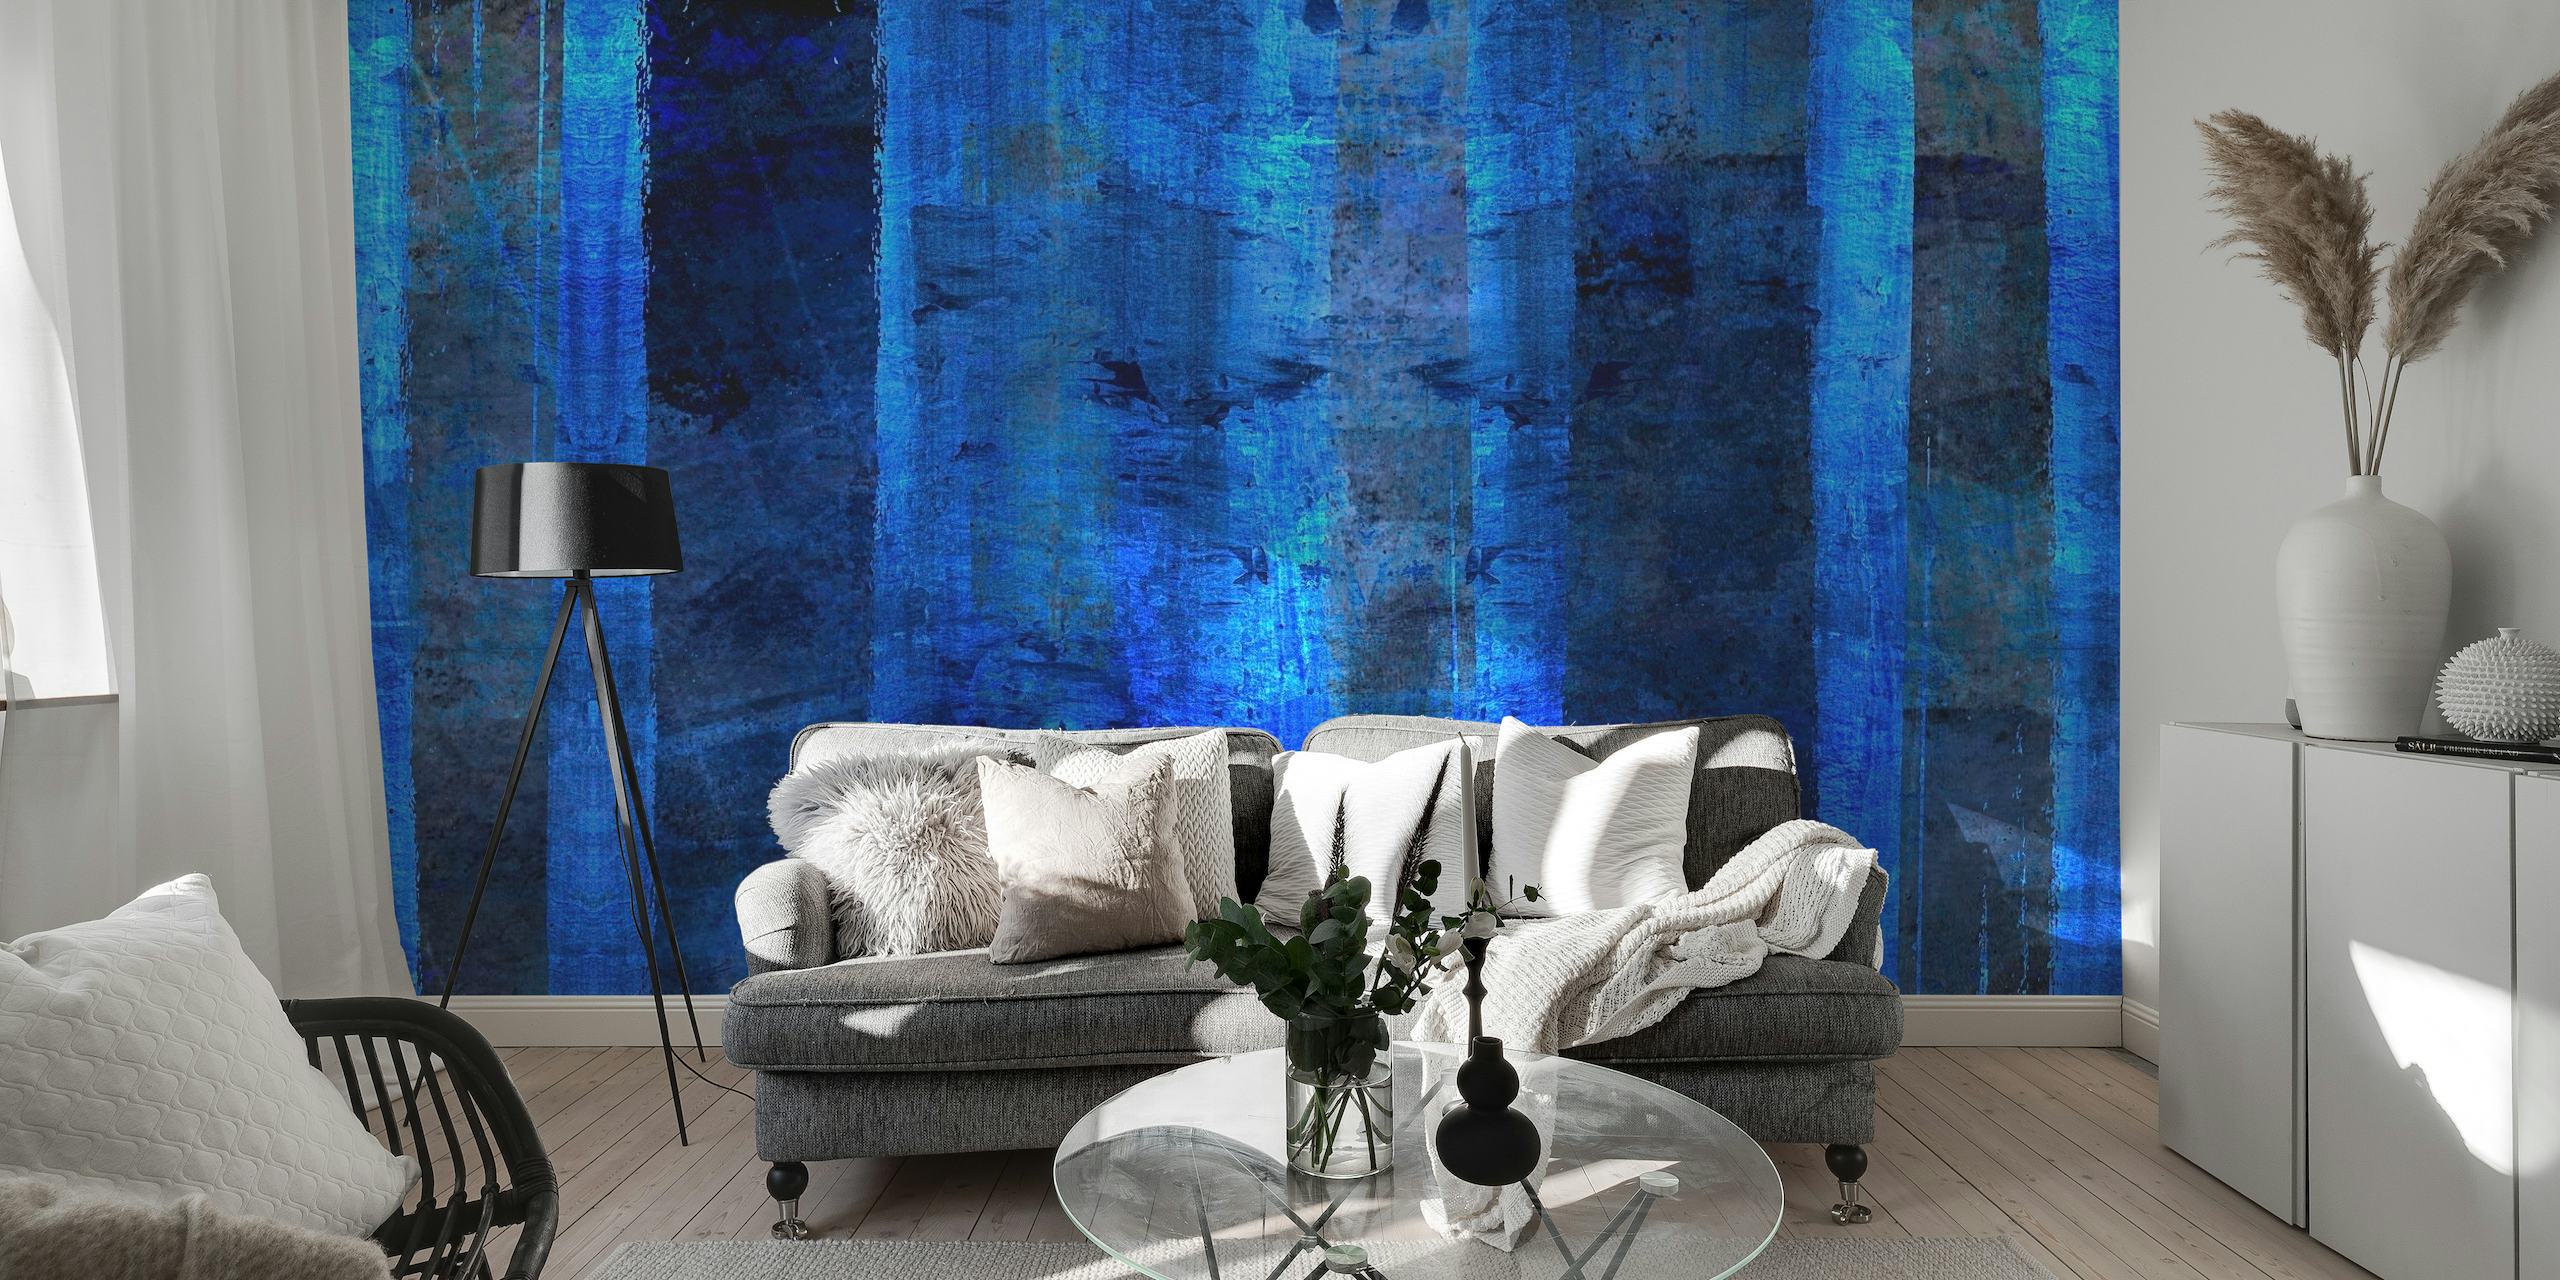 Etéreo mural de pared en azul índigo con rayas verticales abstractas